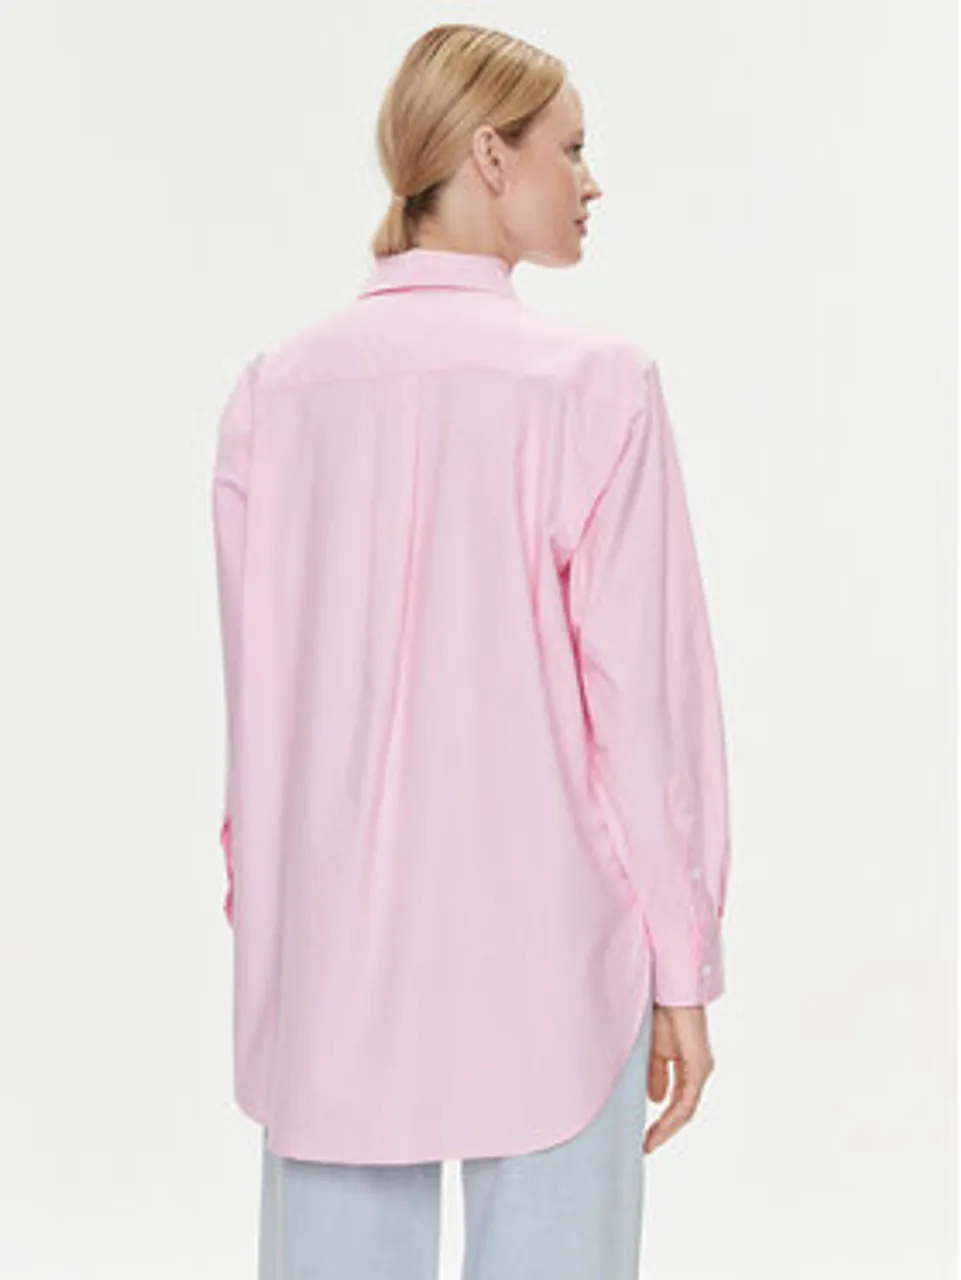 Hilfiger vergleichen Bluse Tommy 634818-0001-00340 Baumwolle - Damen rosa Preise